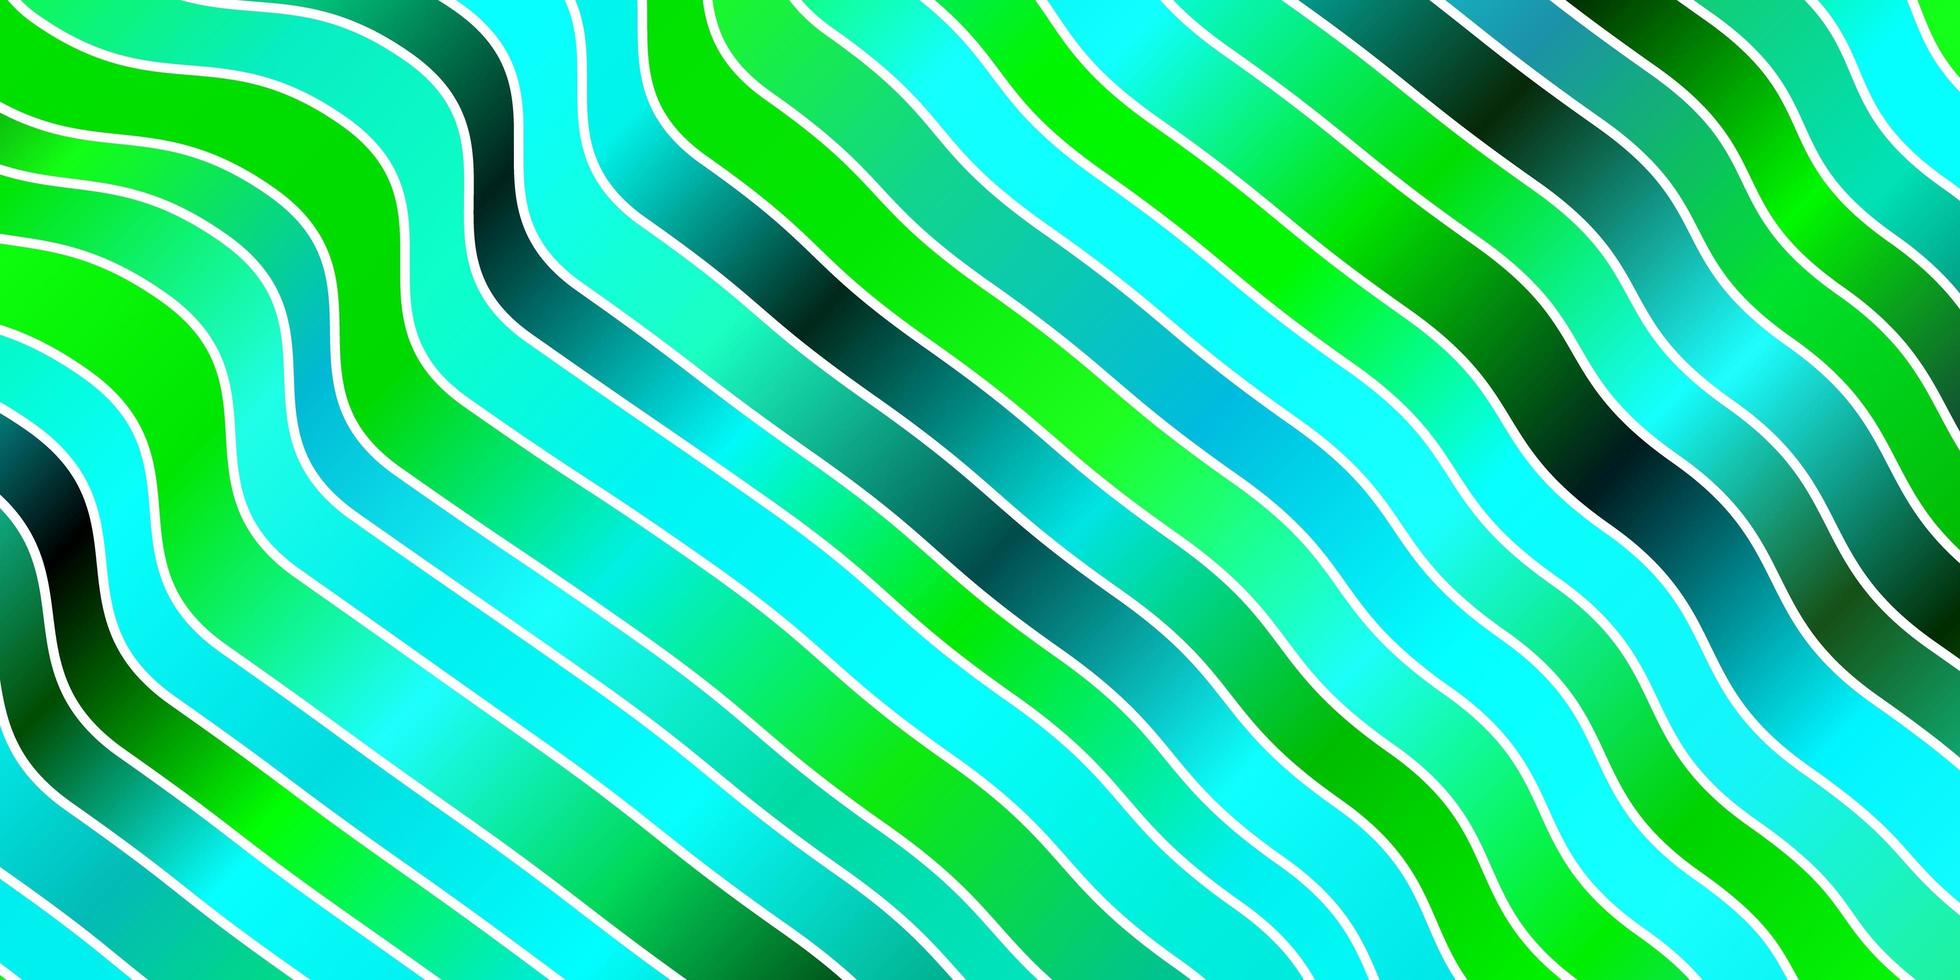 ljusblå, grön vektorlayout med kurvor. vektor